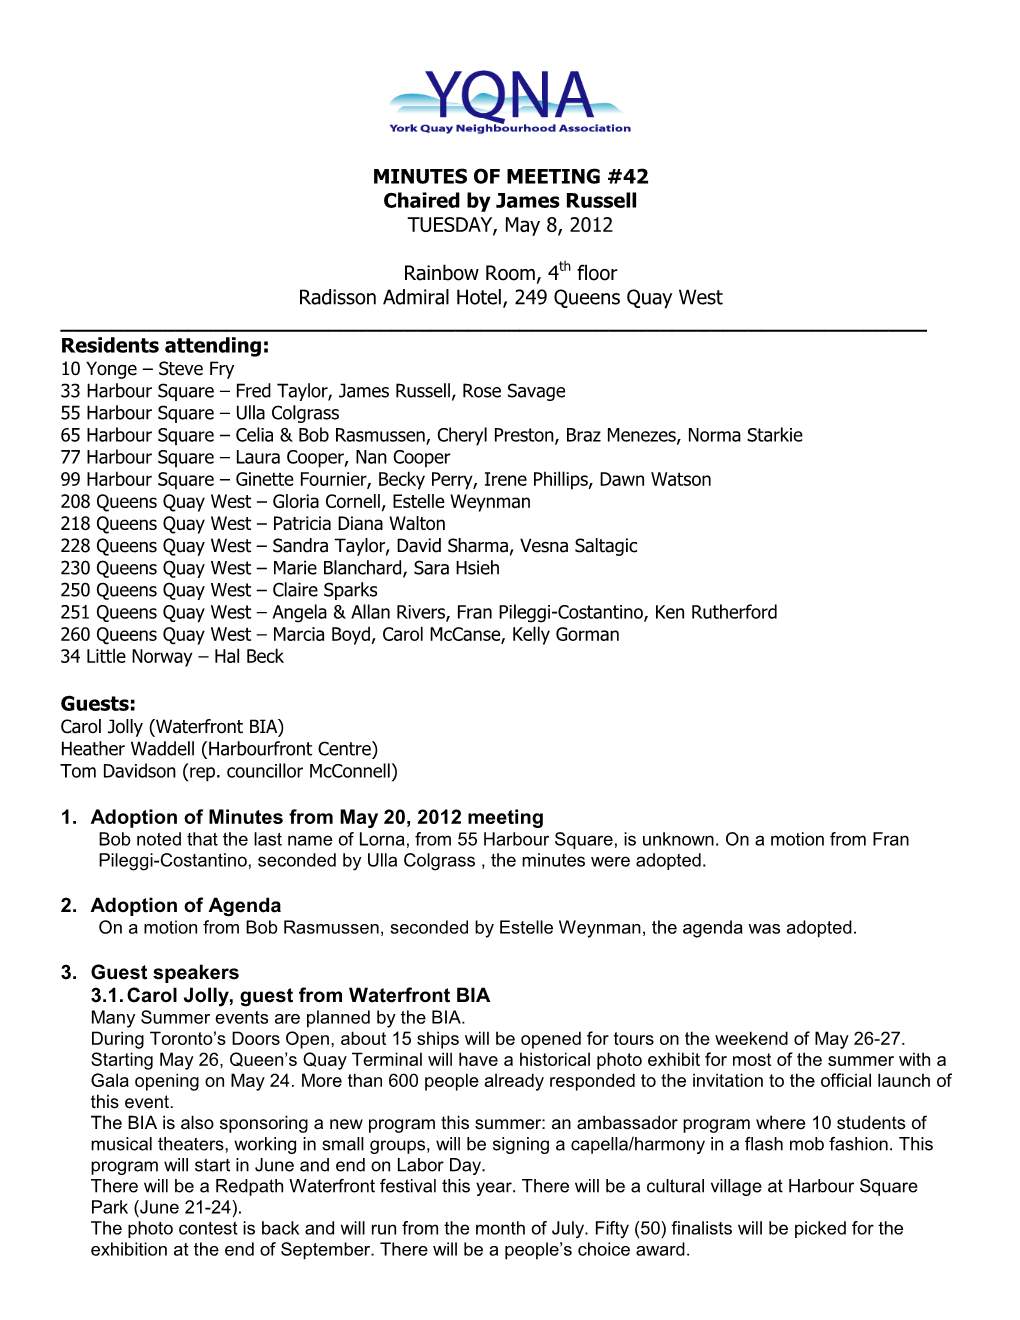 YQNA Meeting 42 – May 8, 2012 – Minutes